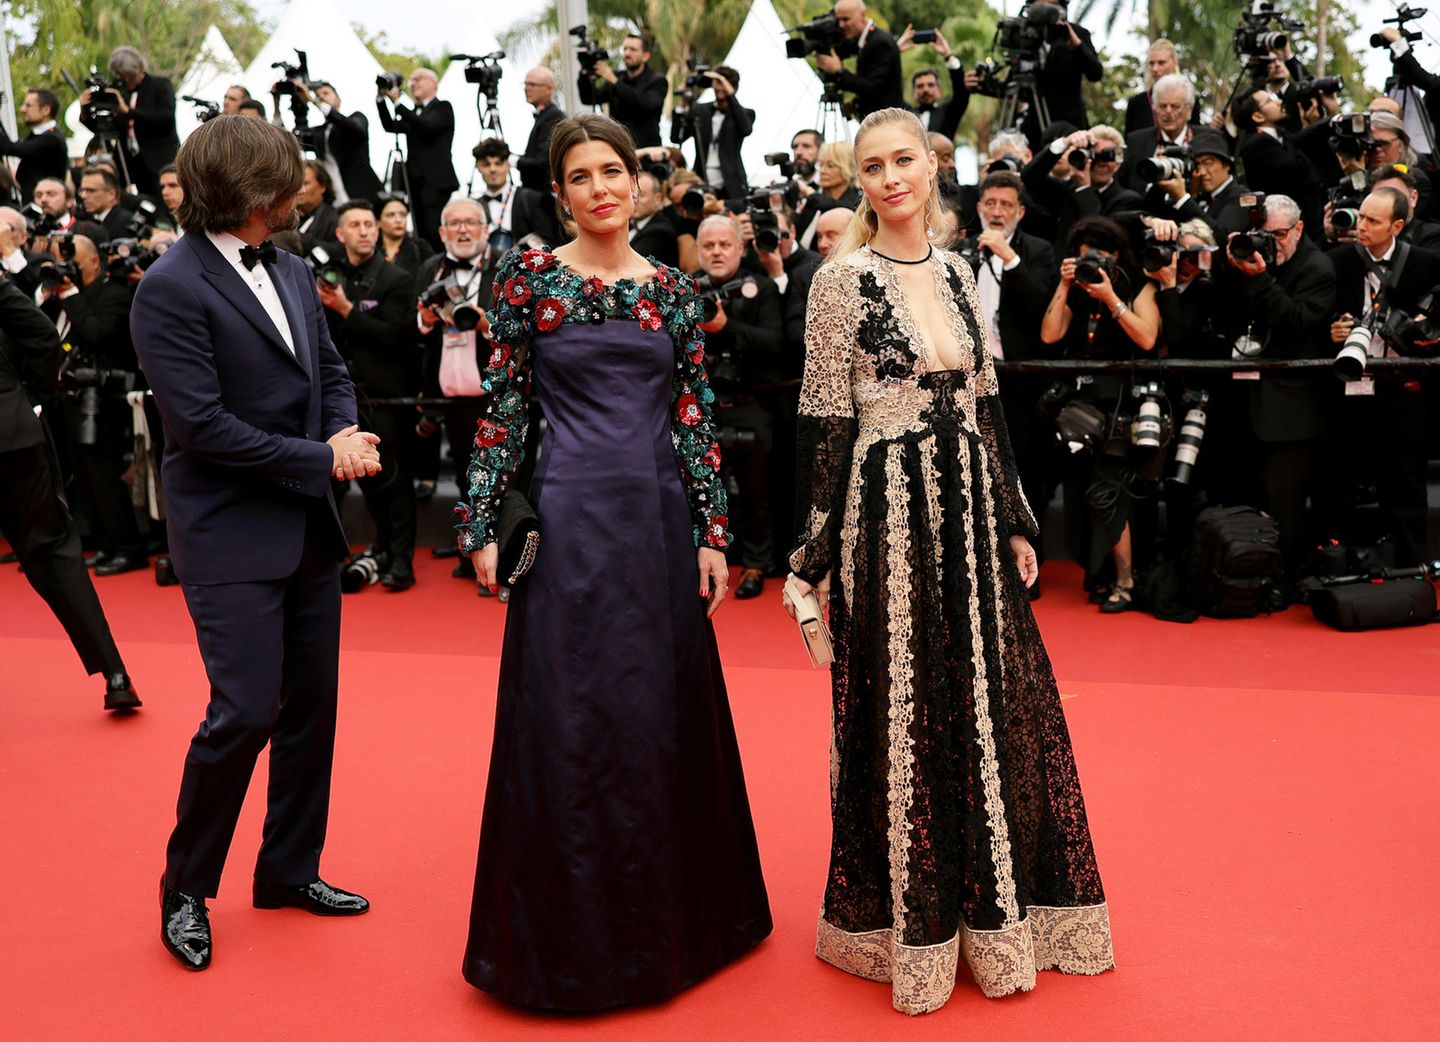 Modische Monegassinnen: Charlotte Casiraghi und Beatrice Borromeo zeigen jeweils ihre eigene Version von floralem Glamour, Charlotte in einem dunkelblauen Seiden-Look von Chanel, ihre Schwägerin trägt ein Spitzenkleid von Dior.